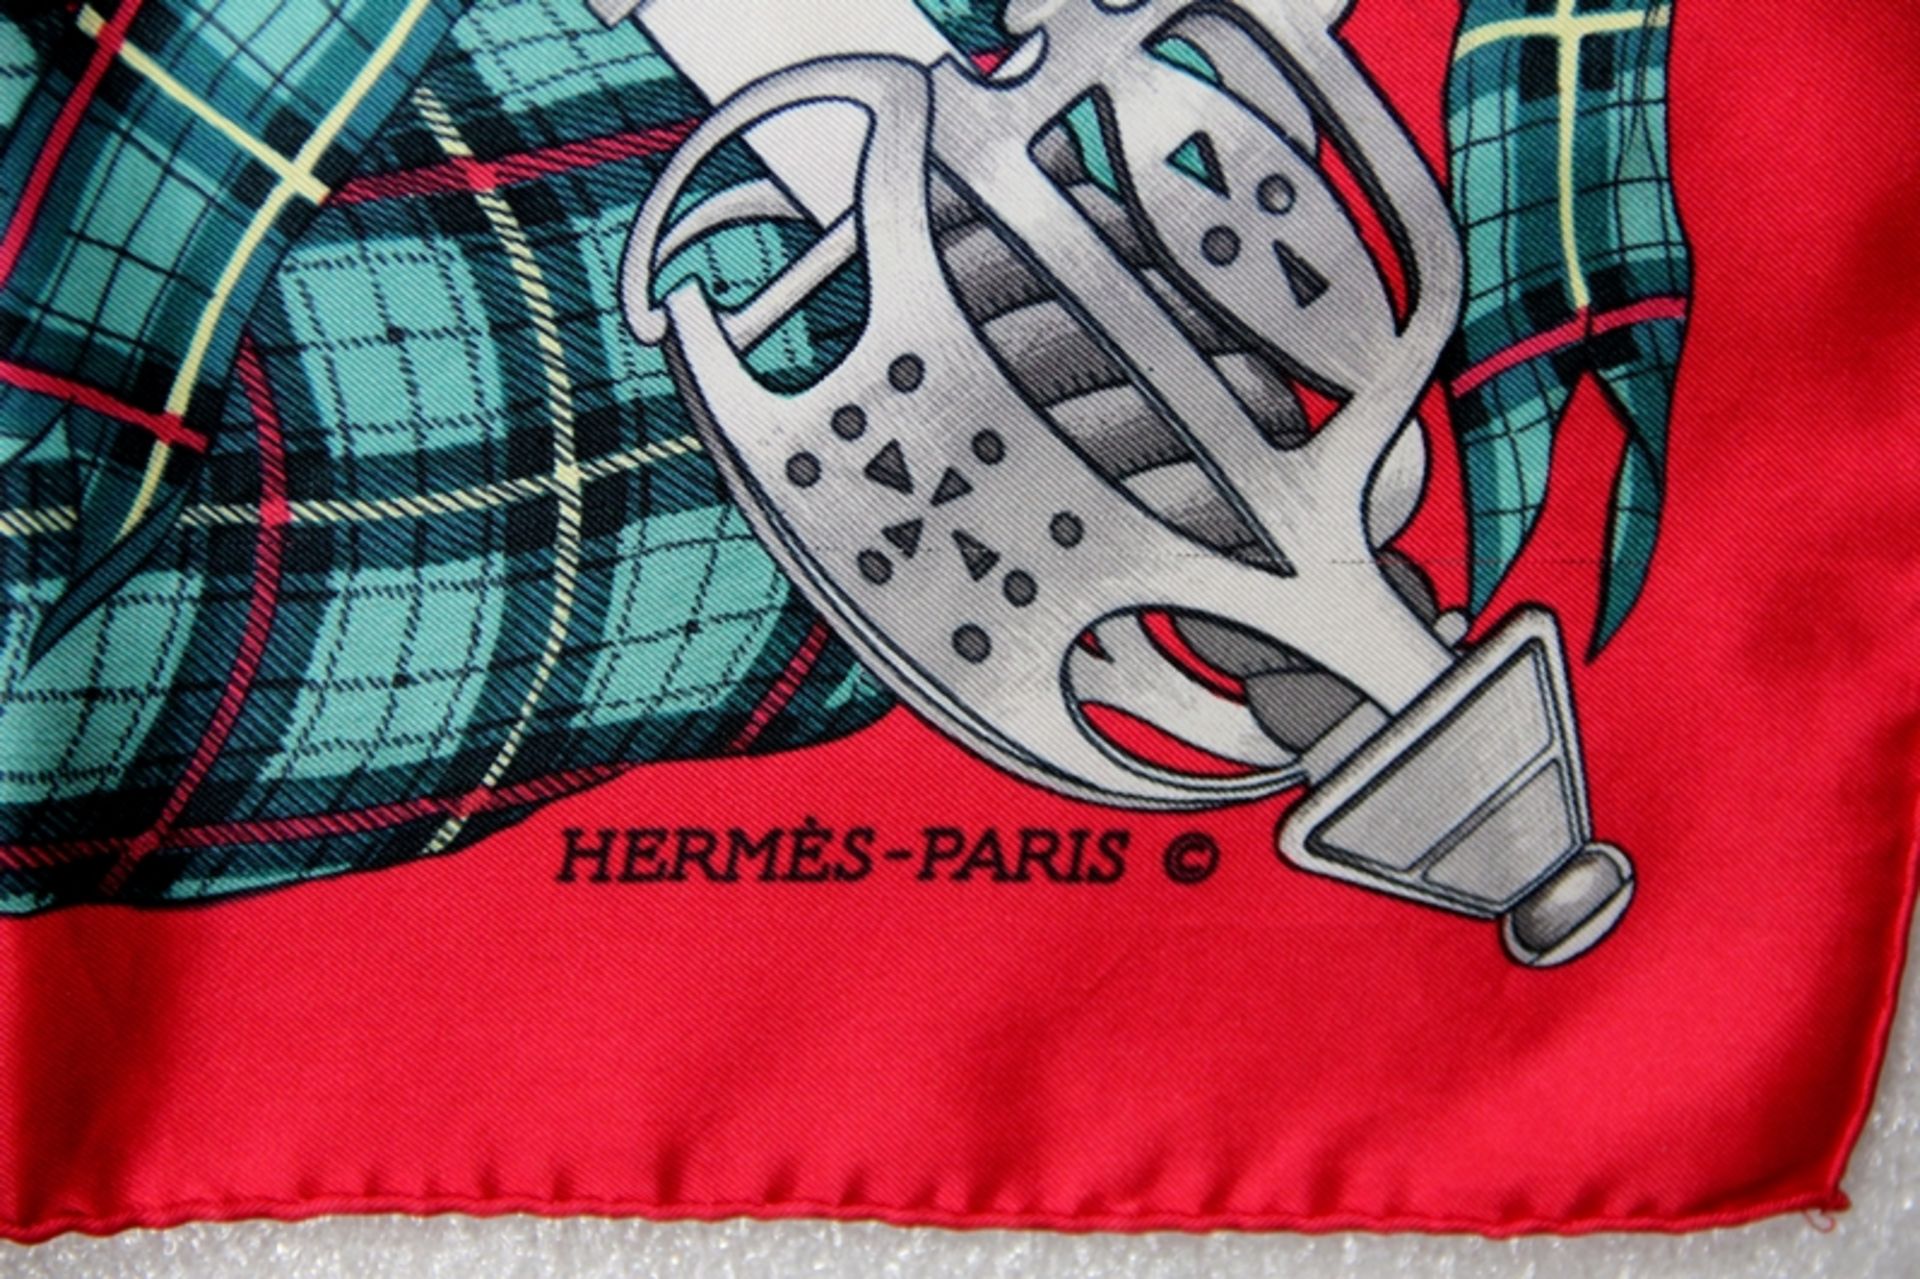 Hermès-Tuch - Bild 3 aus 6